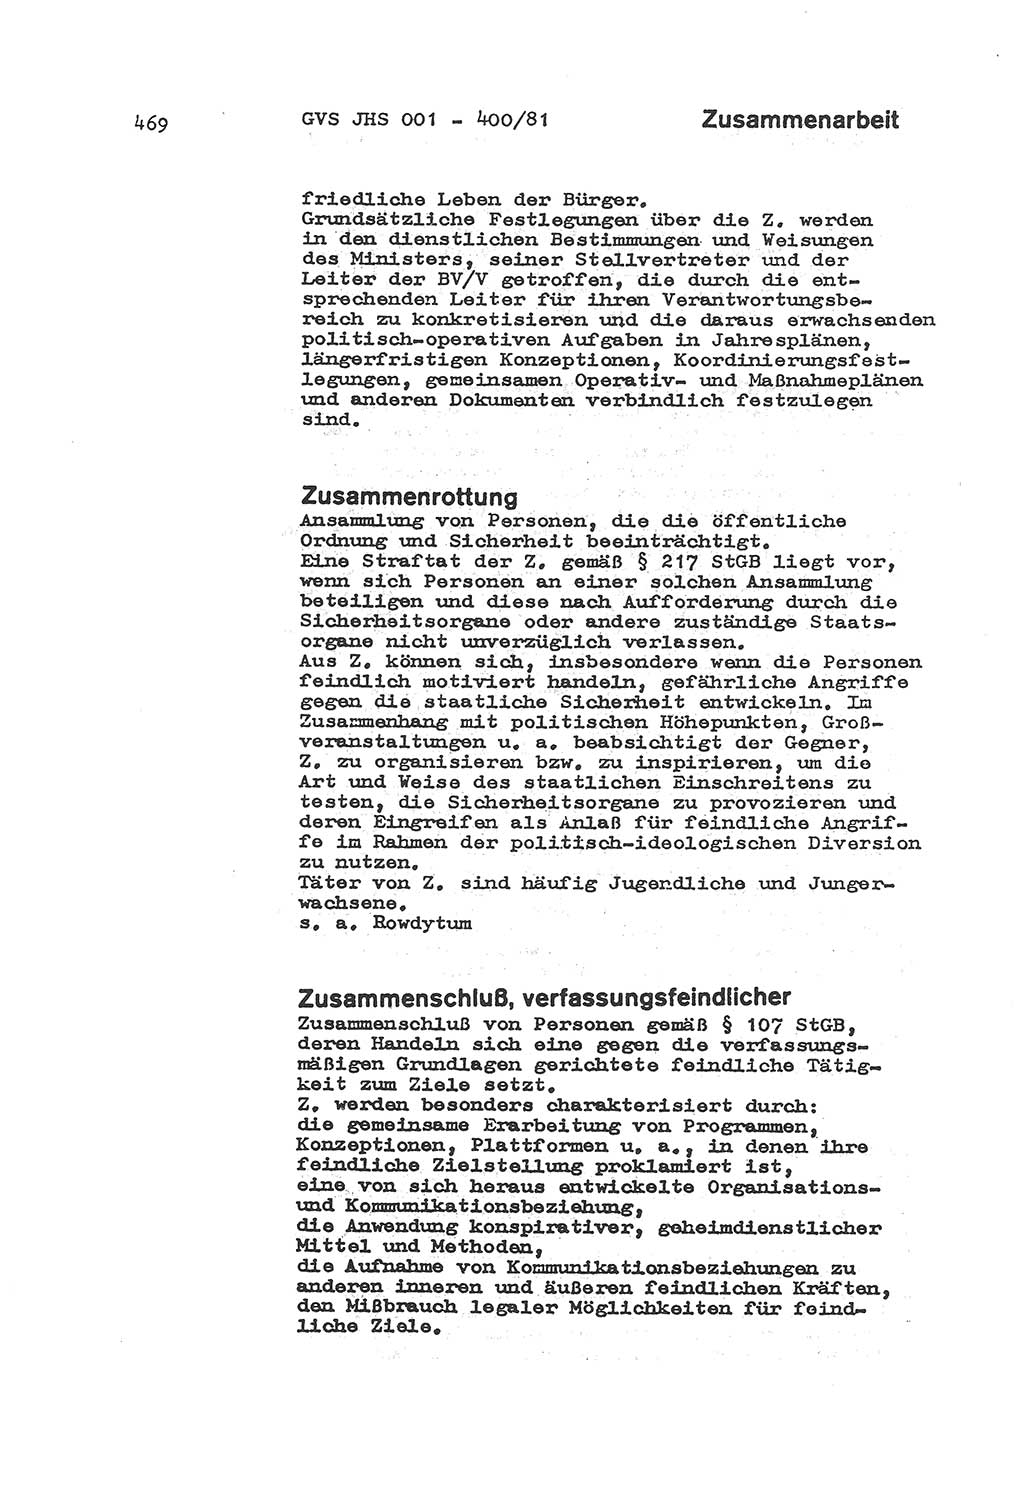 Wörterbuch der politisch-operativen Arbeit, Ministerium für Staatssicherheit (MfS) [Deutsche Demokratische Republik (DDR)], Juristische Hochschule (JHS), Geheime Verschlußsache (GVS) o001-400/81, Potsdam 1985, Blatt 469 (Wb. pol.-op. Arb. MfS DDR JHS GVS o001-400/81 1985, Bl. 469)